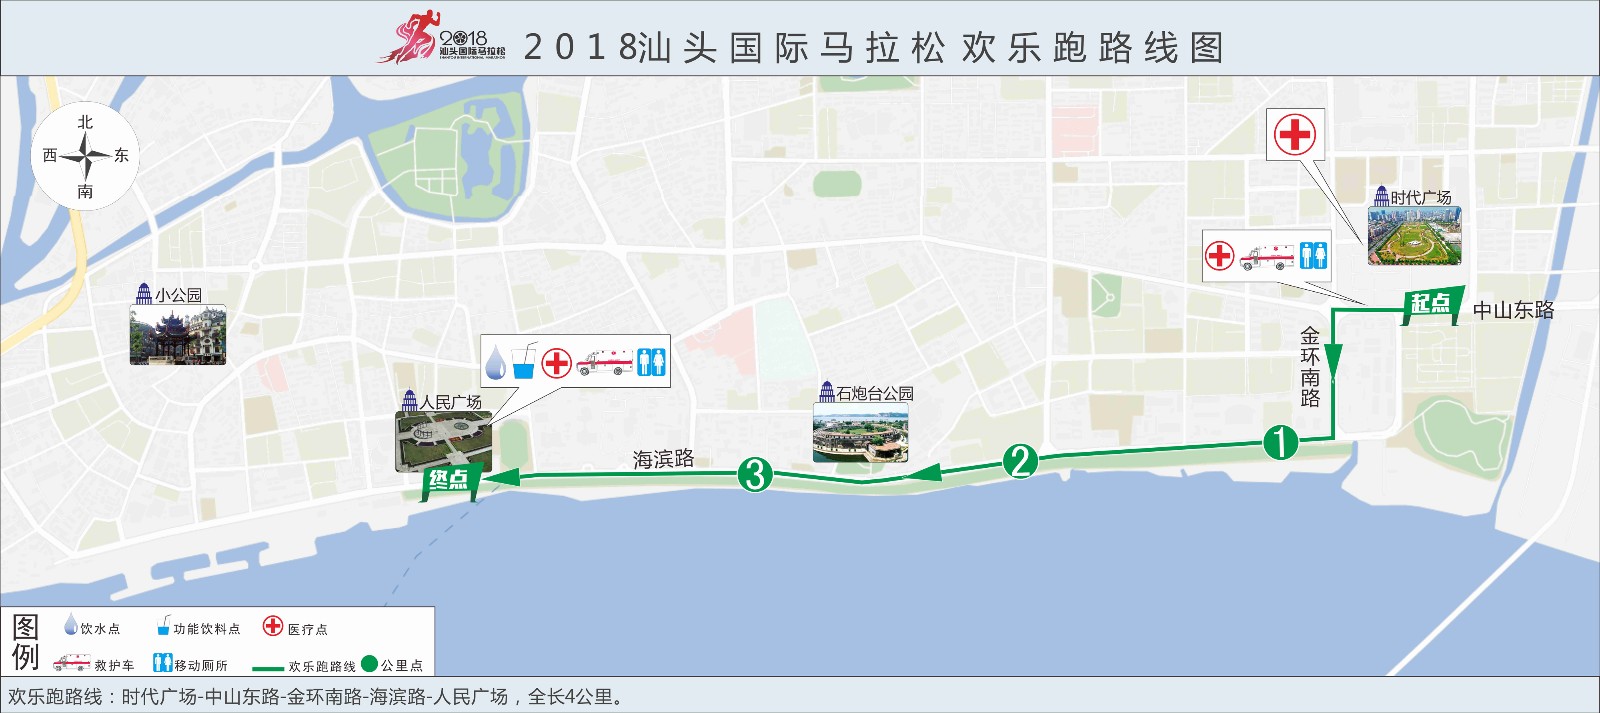 2018汕头国际马拉松赛欢乐跑路线图